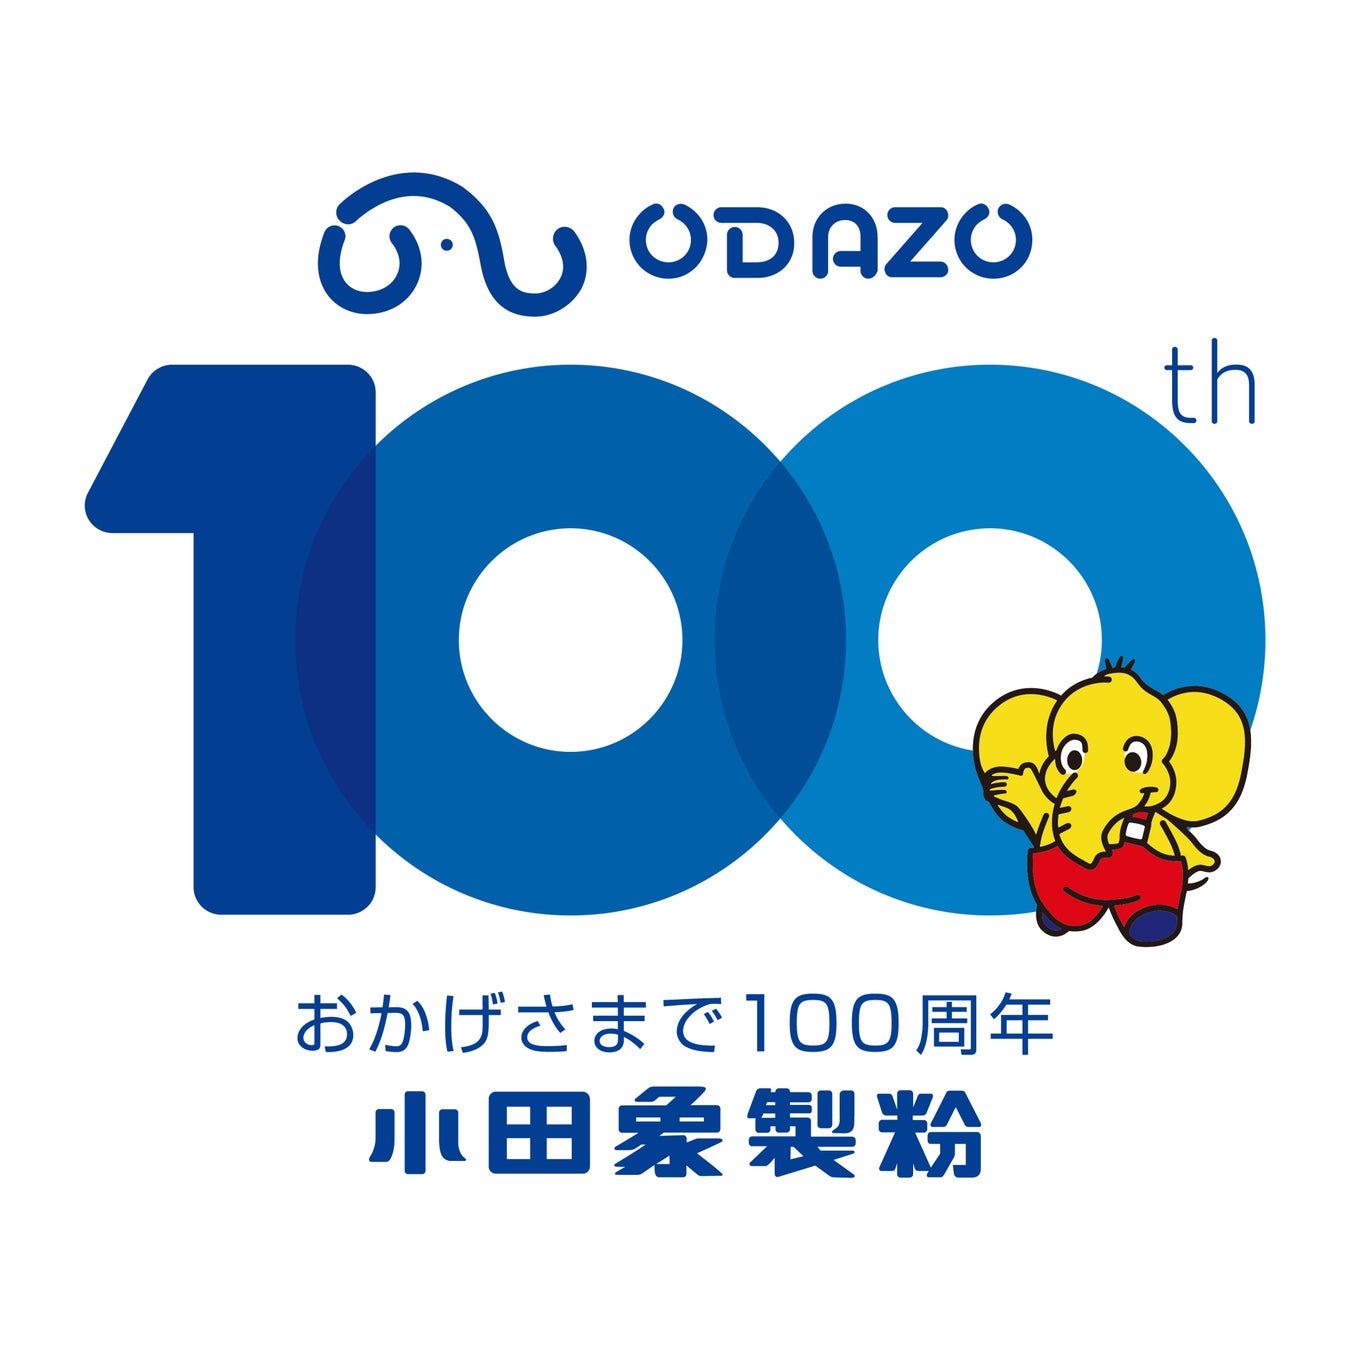 小田象製粉株式会社　創業100周年を迎えました